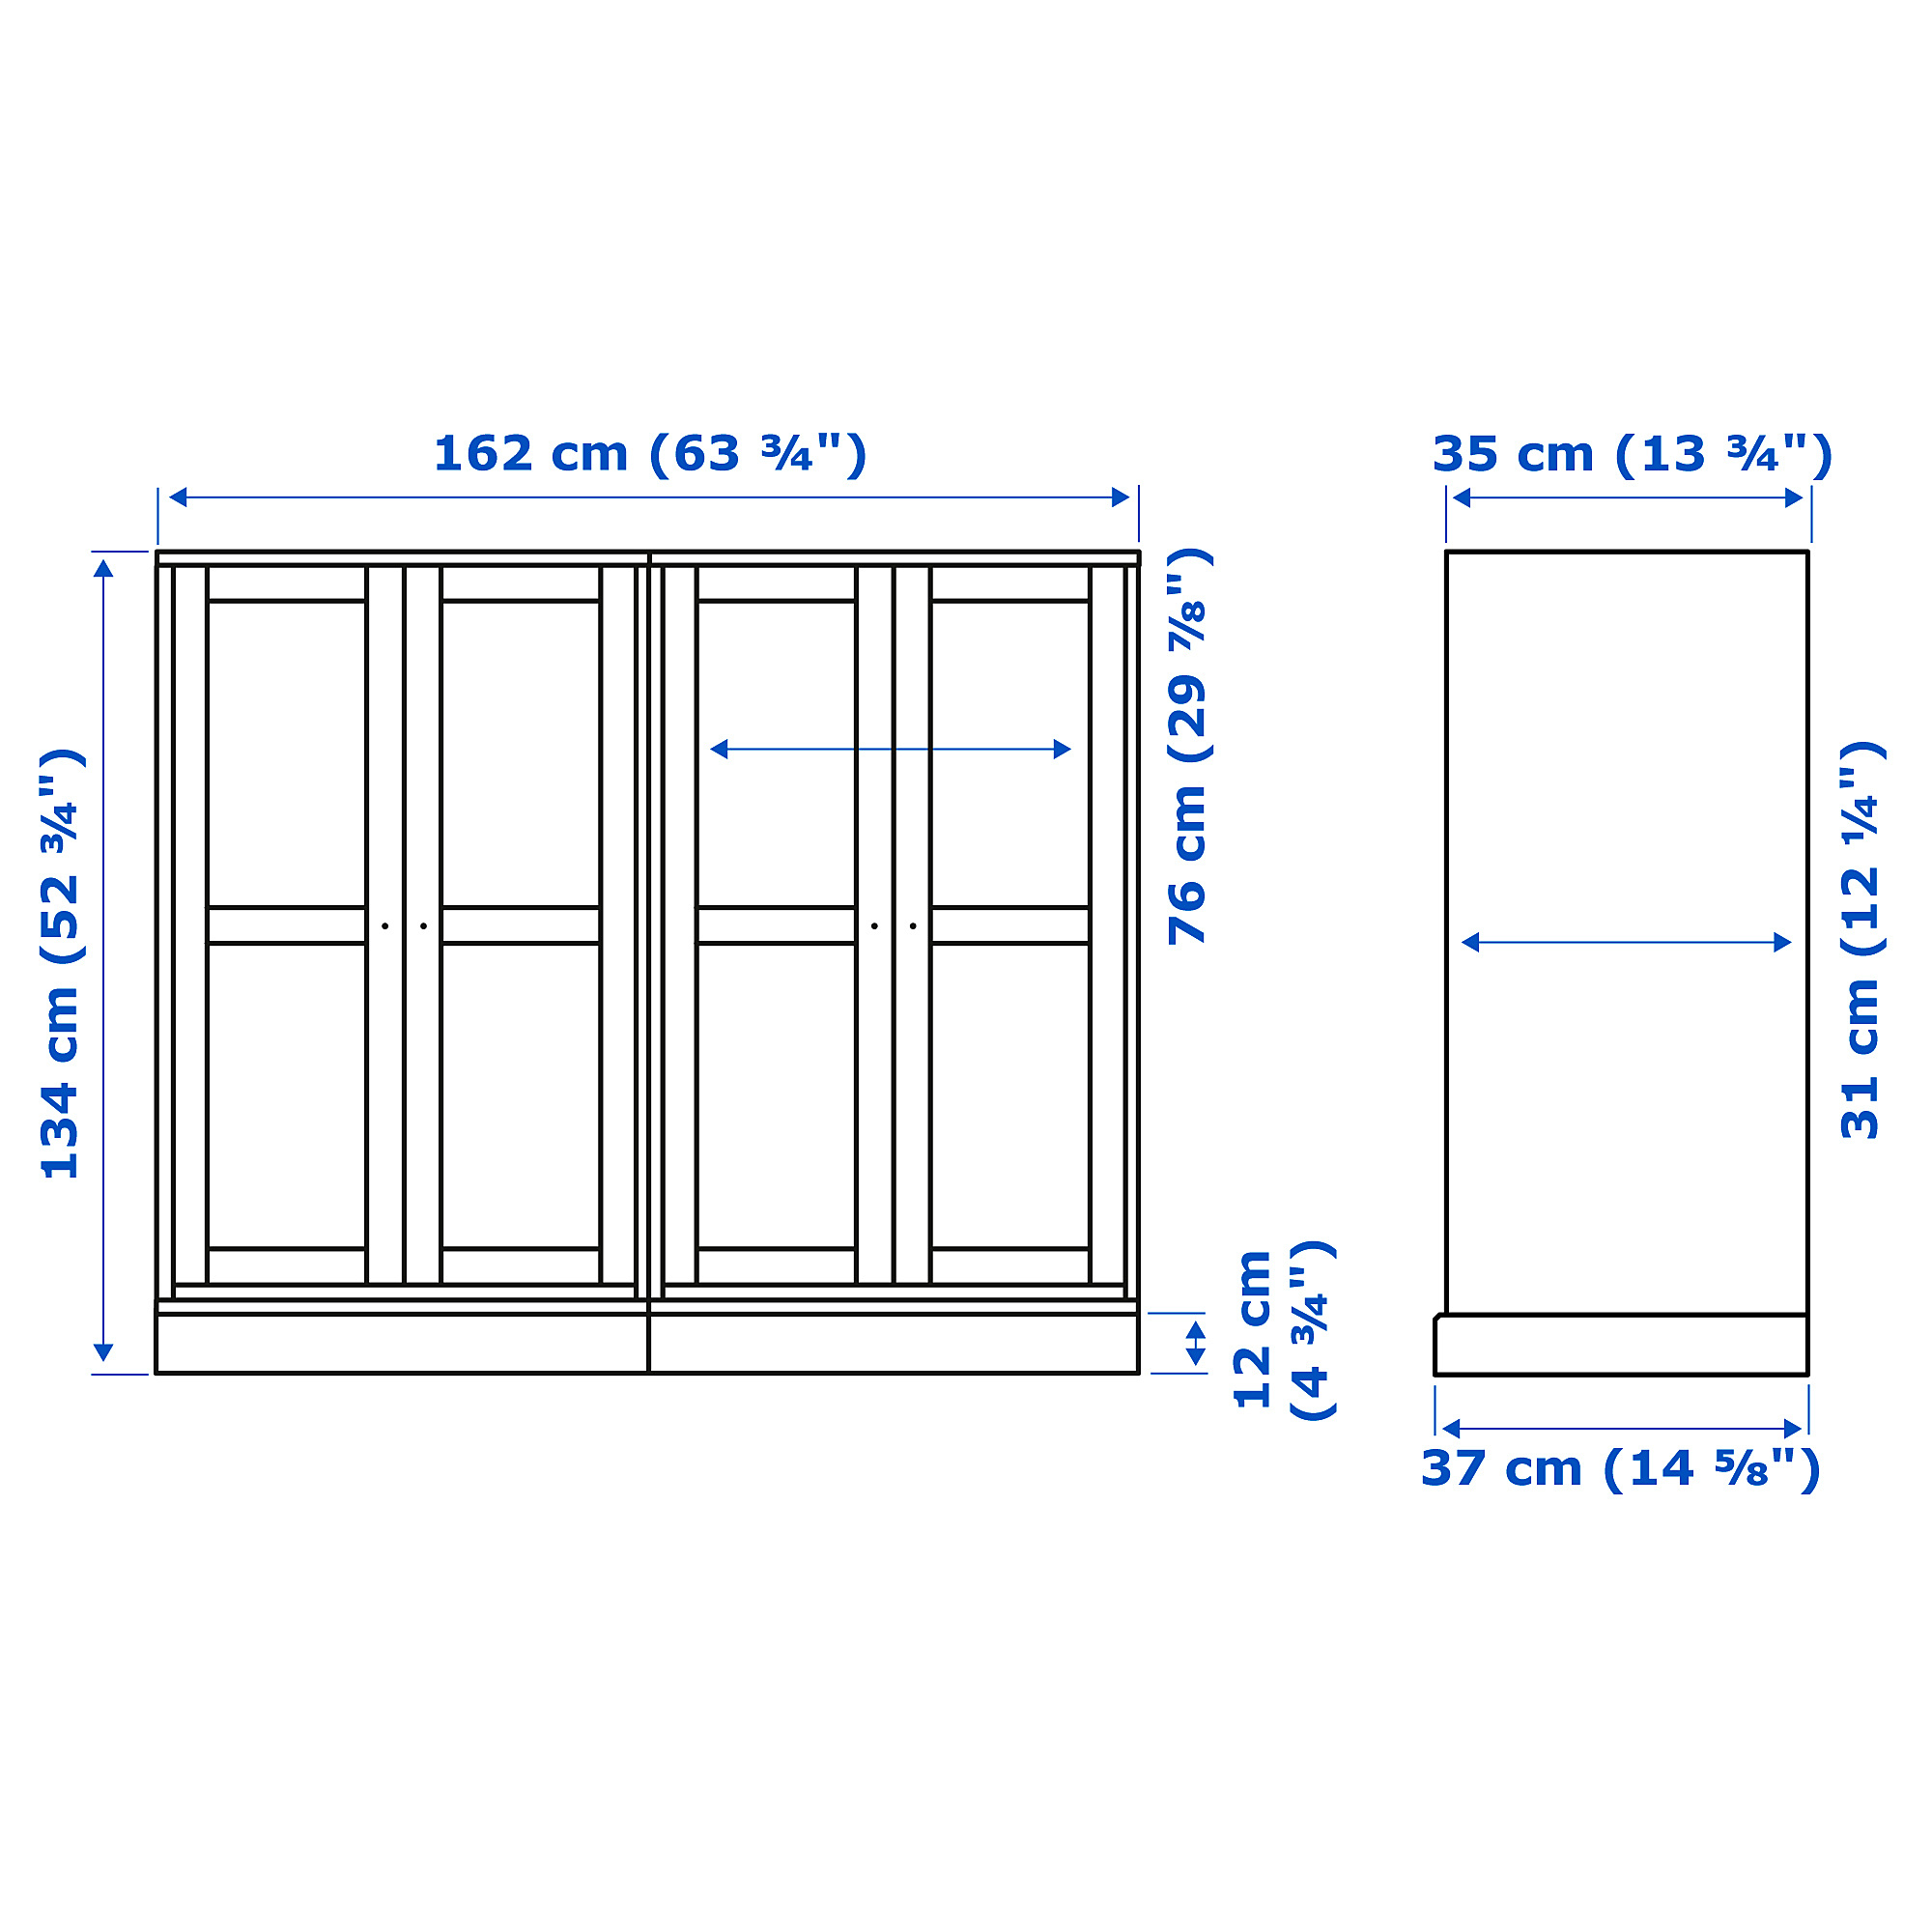 HAVSTA storage combination w glass doors